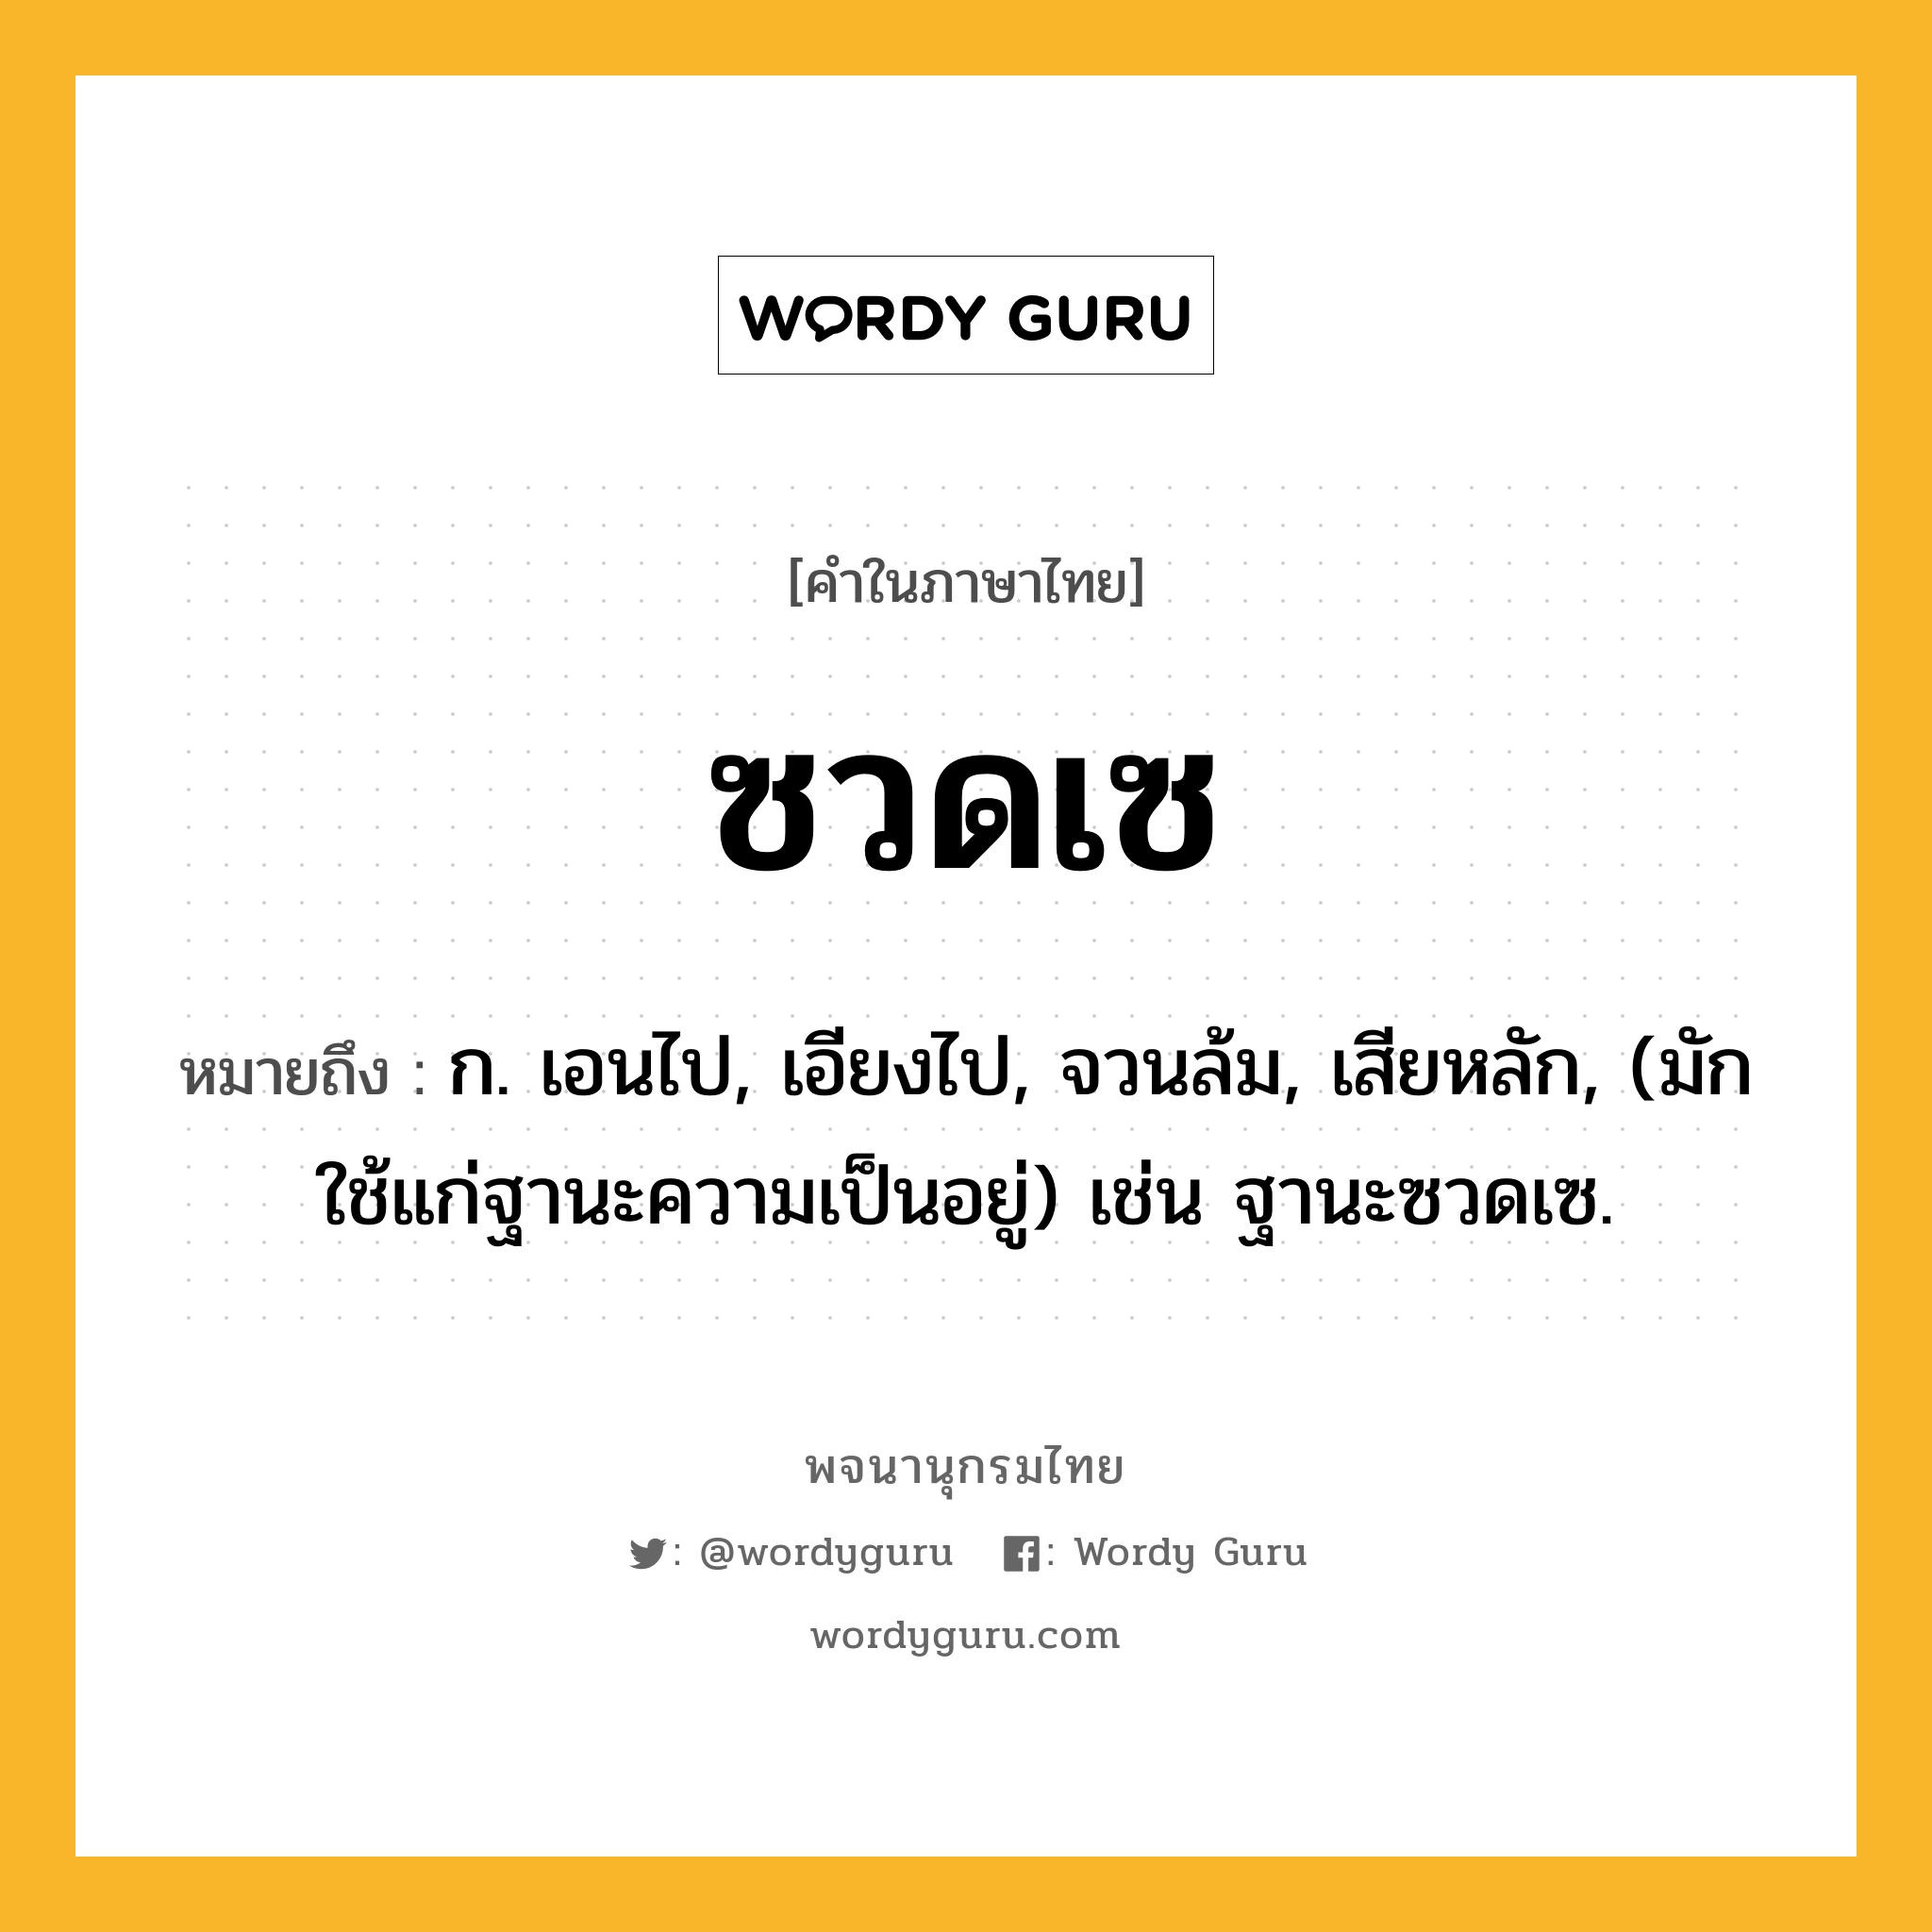 ซวดเซ ความหมาย หมายถึงอะไร?, คำในภาษาไทย ซวดเซ หมายถึง ก. เอนไป, เอียงไป, จวนล้ม, เสียหลัก, (มักใช้แก่ฐานะความเป็นอยู่) เช่น ฐานะซวดเซ.